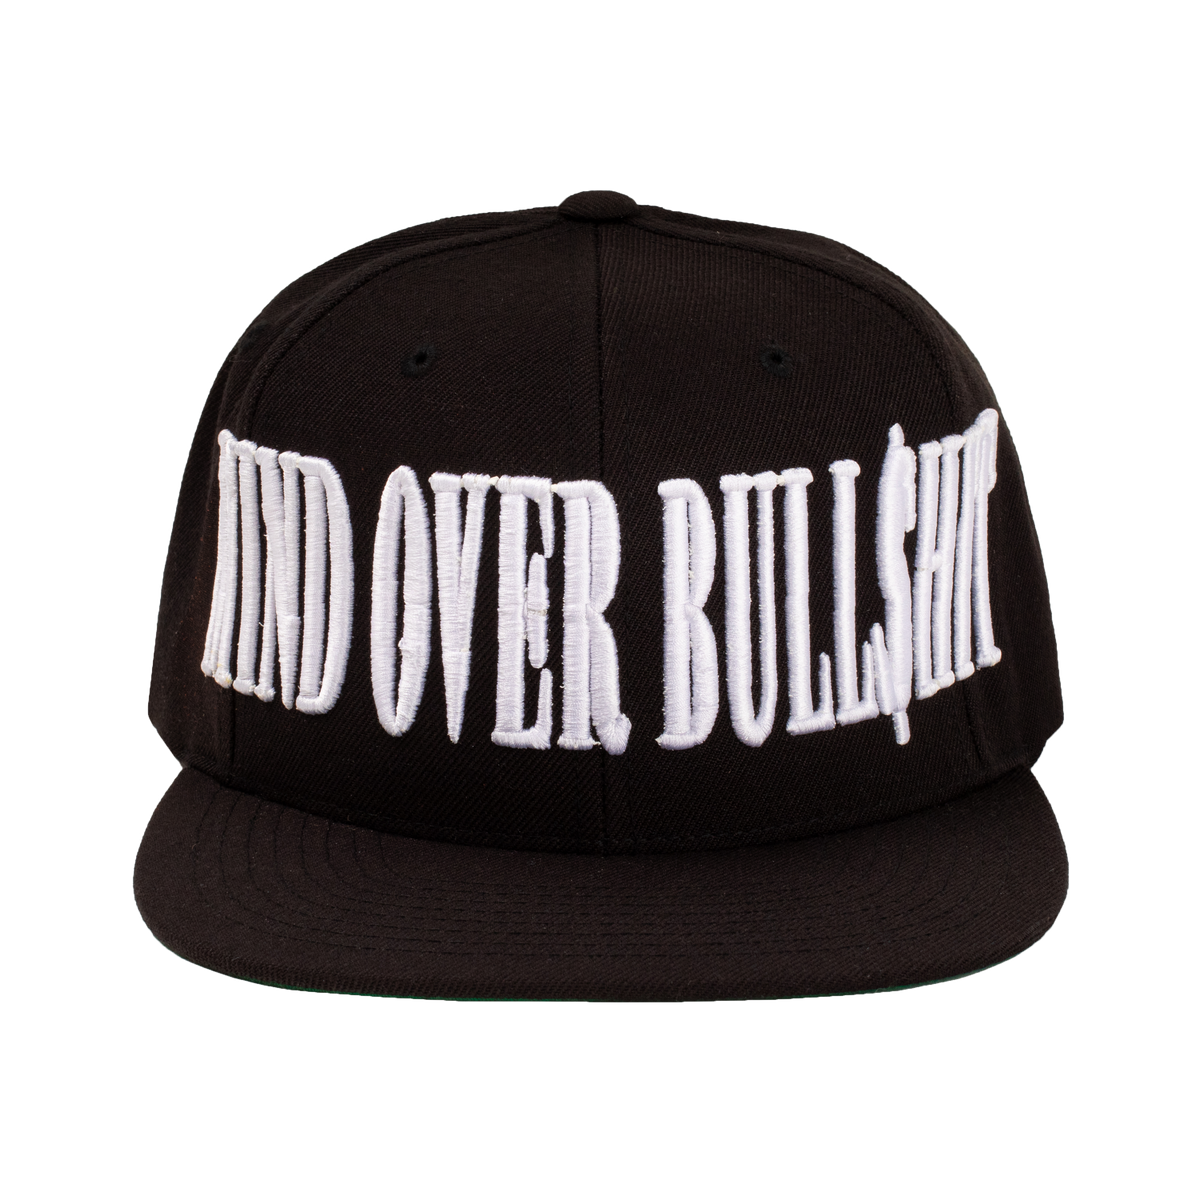 MIND OVER BULL$HIT Hat